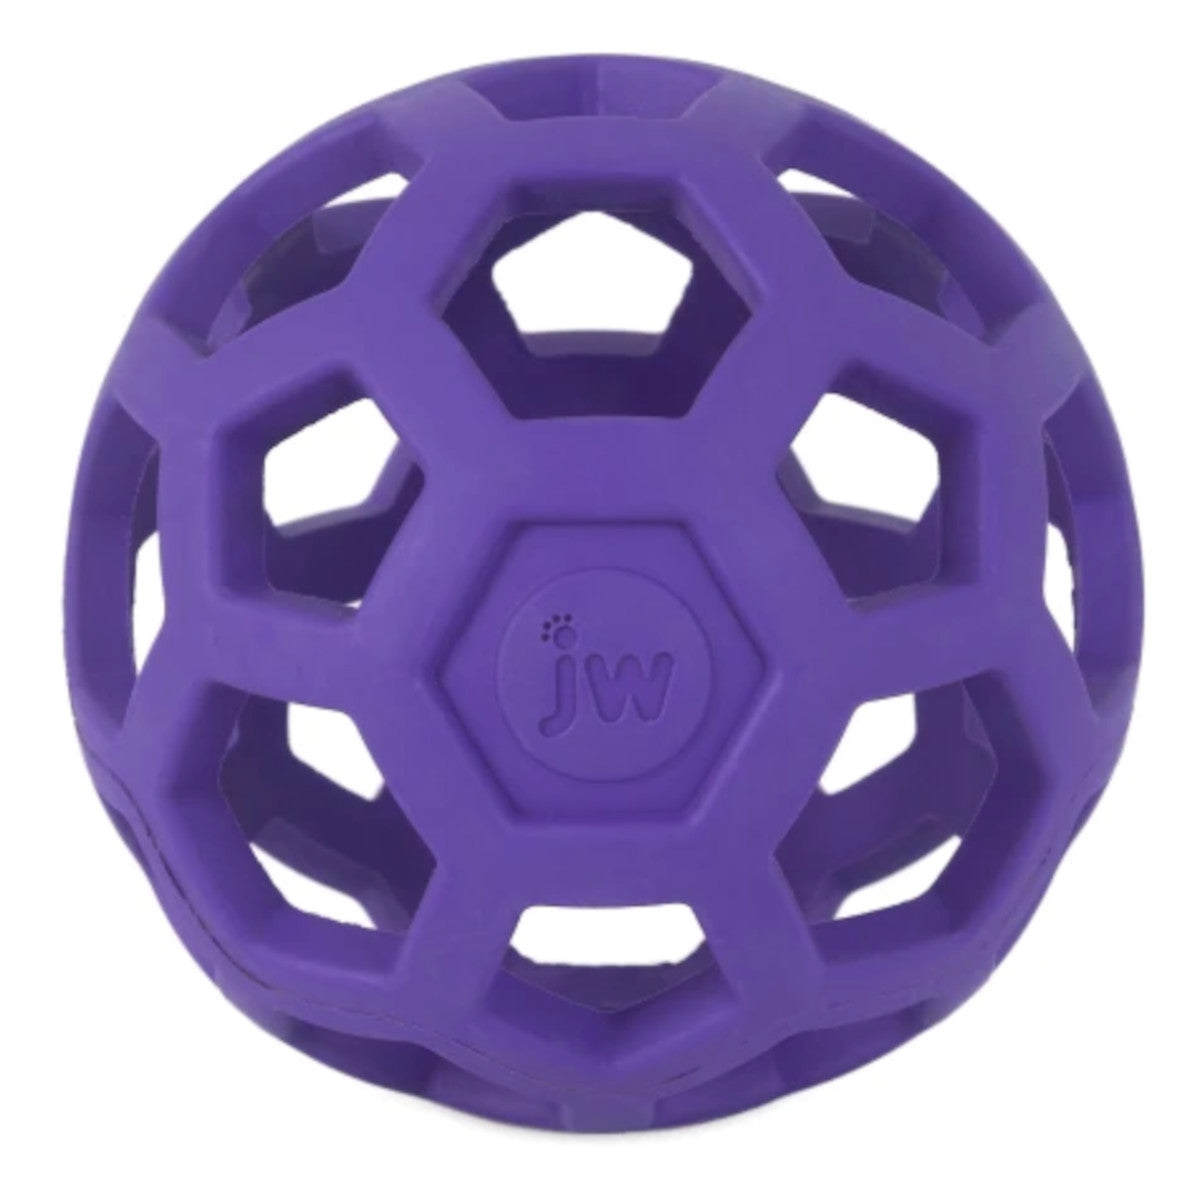 JW Hol-ee Roller Large Dog Toy - Purple